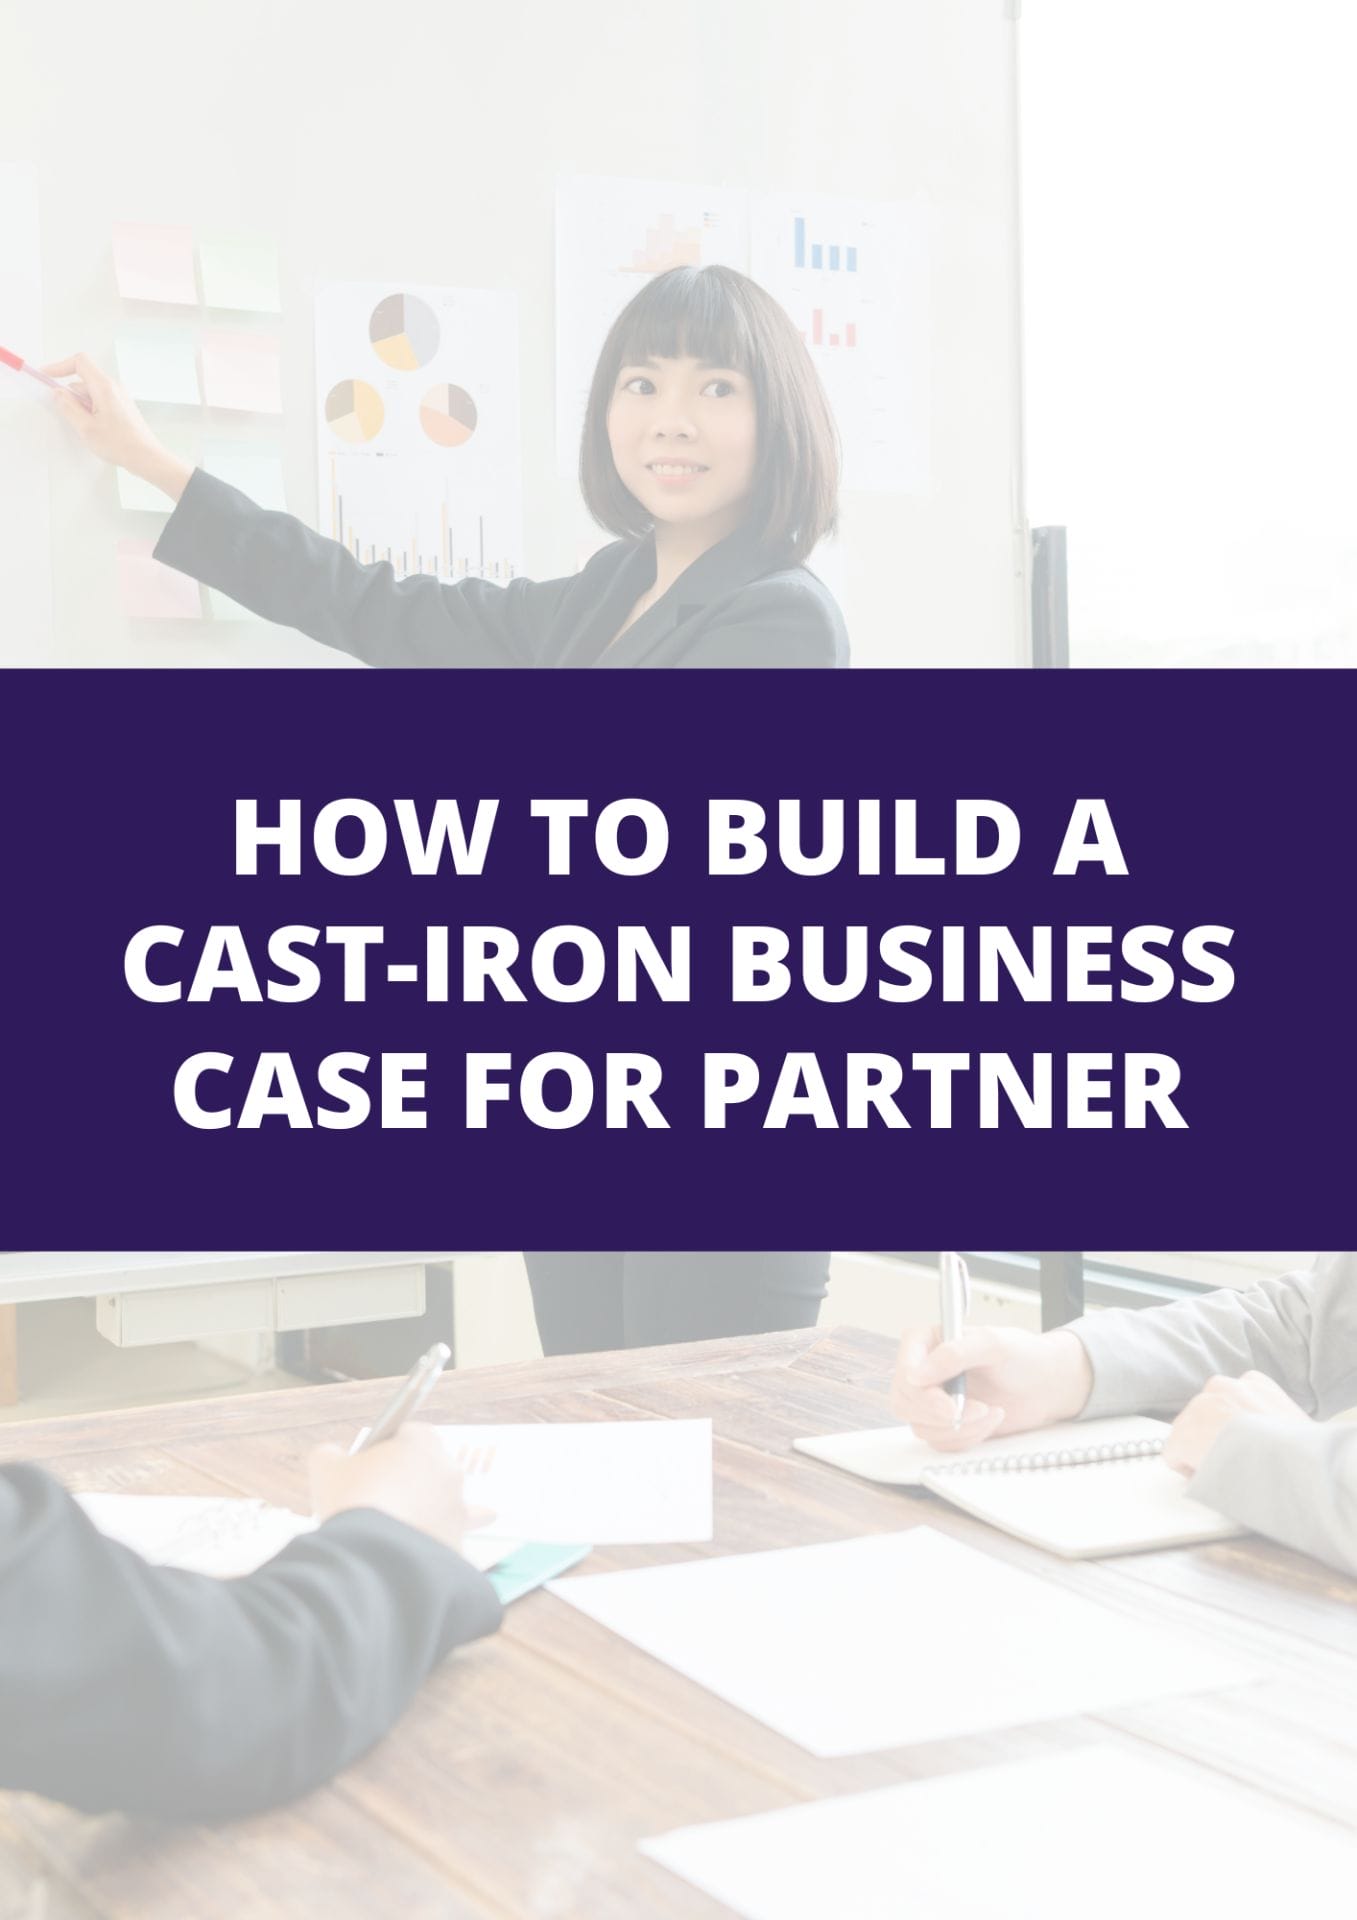 Cast iron business case